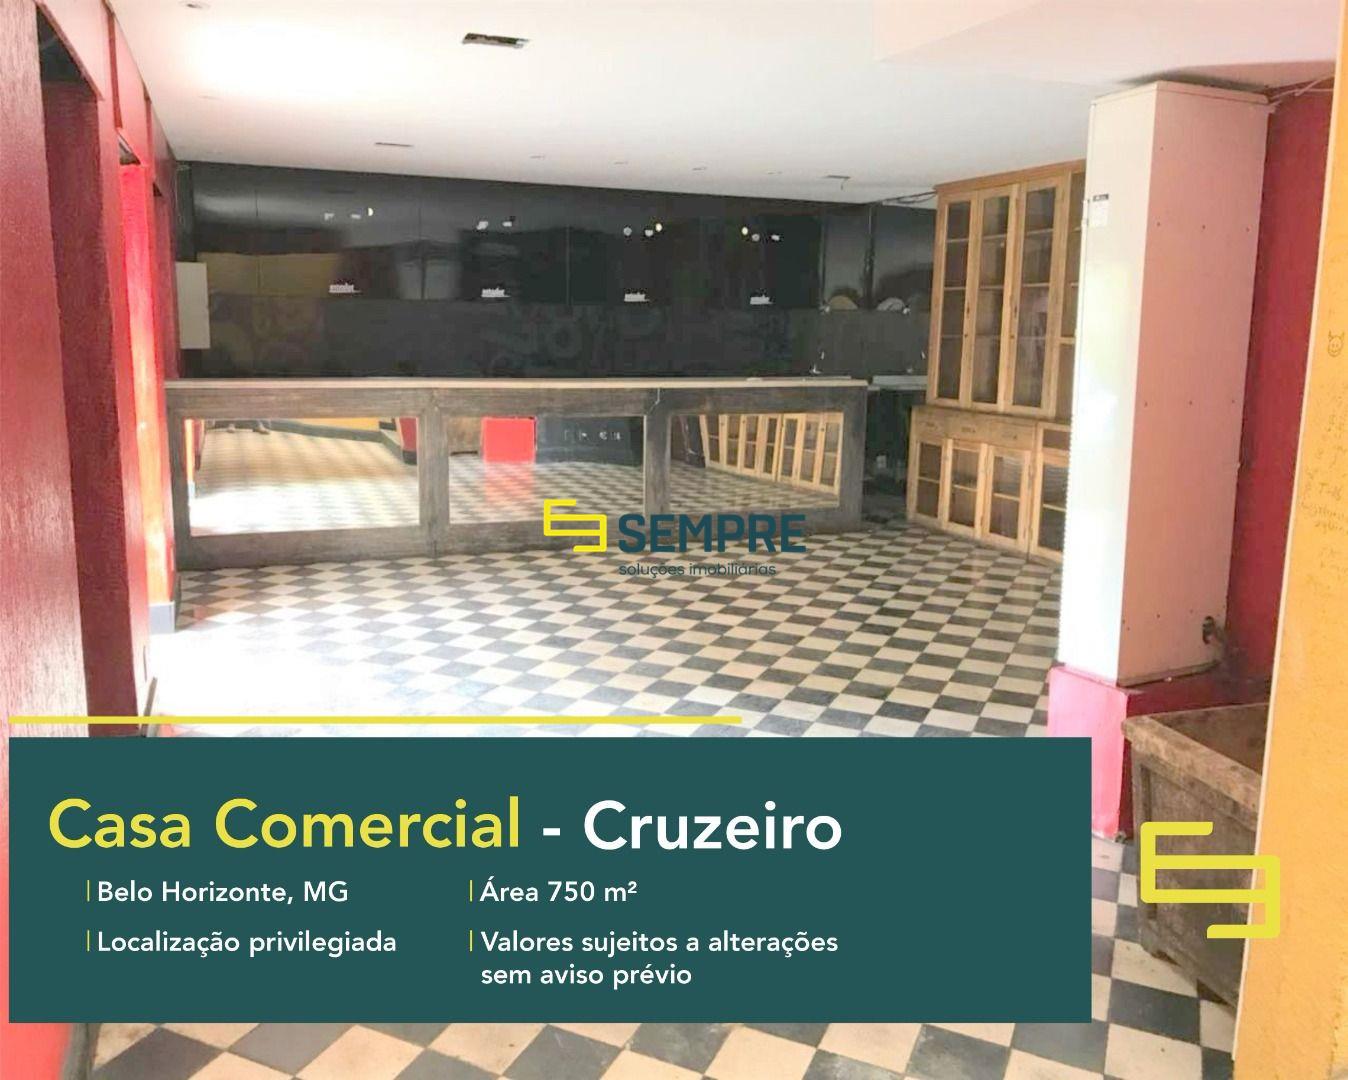 Casa comercial para alugar no Cruzeiro em Belo Horizonte, excelente localização. O estabelecimento comercial conta com área de 750 m².